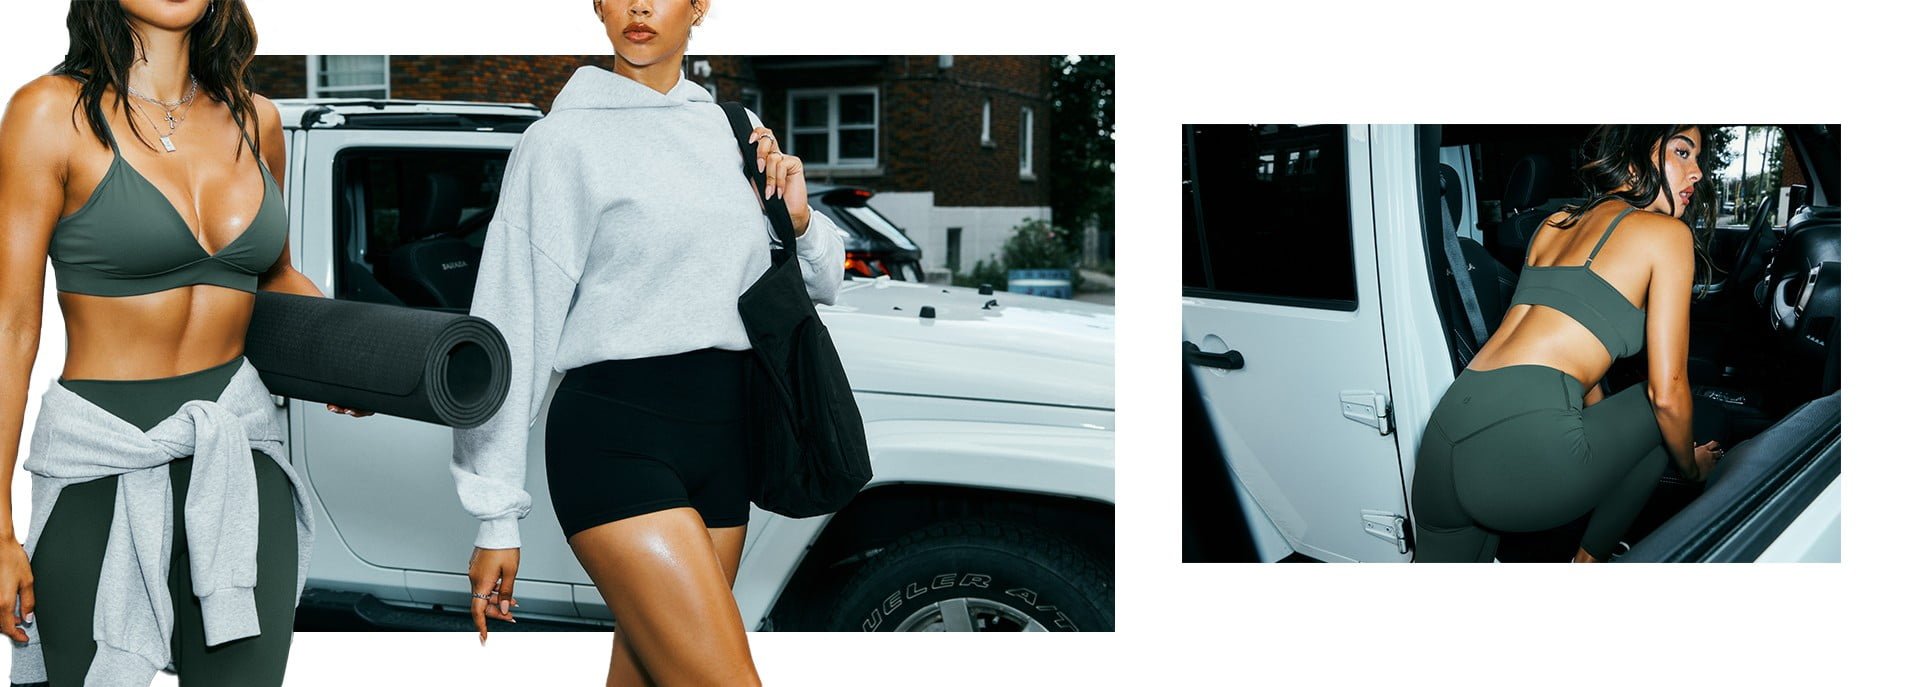 Deux mannequins prennent la pose près d'une voiture. Celle de gauche porte un haut à capuchon gris et un short noir. 